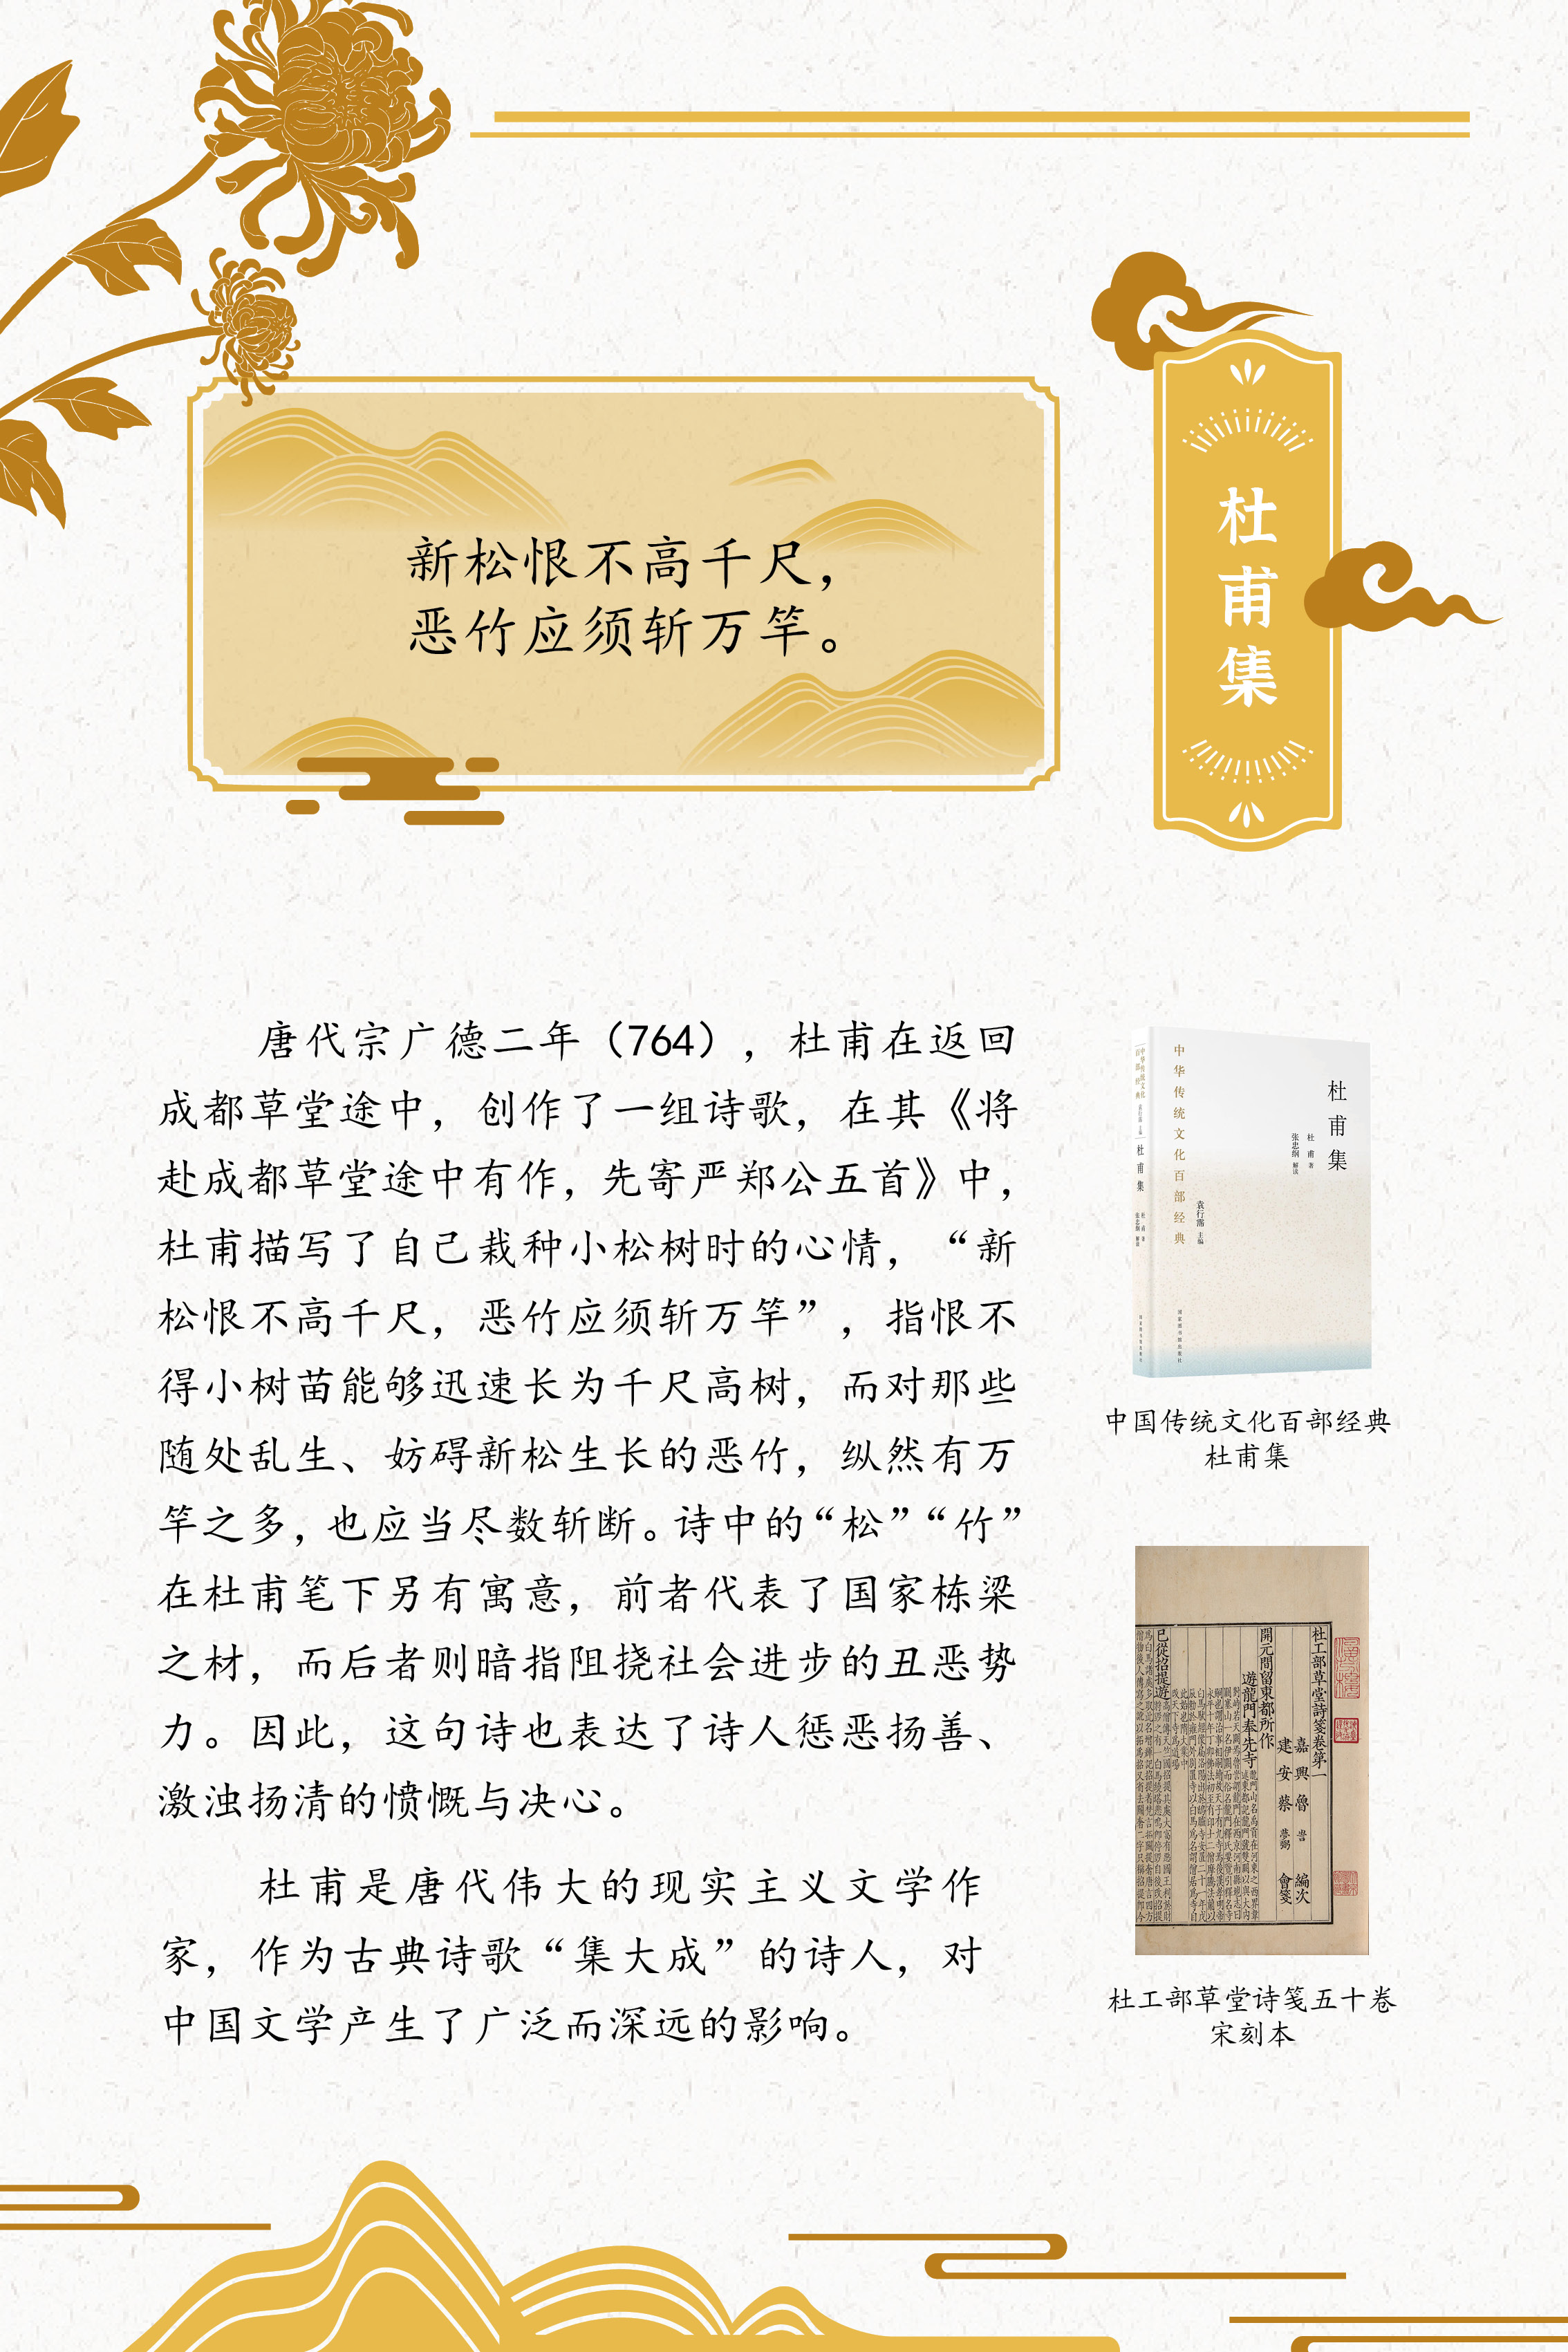 典籍里的中国智慧——《中华传统文化百部经典》阅读推广展_图39